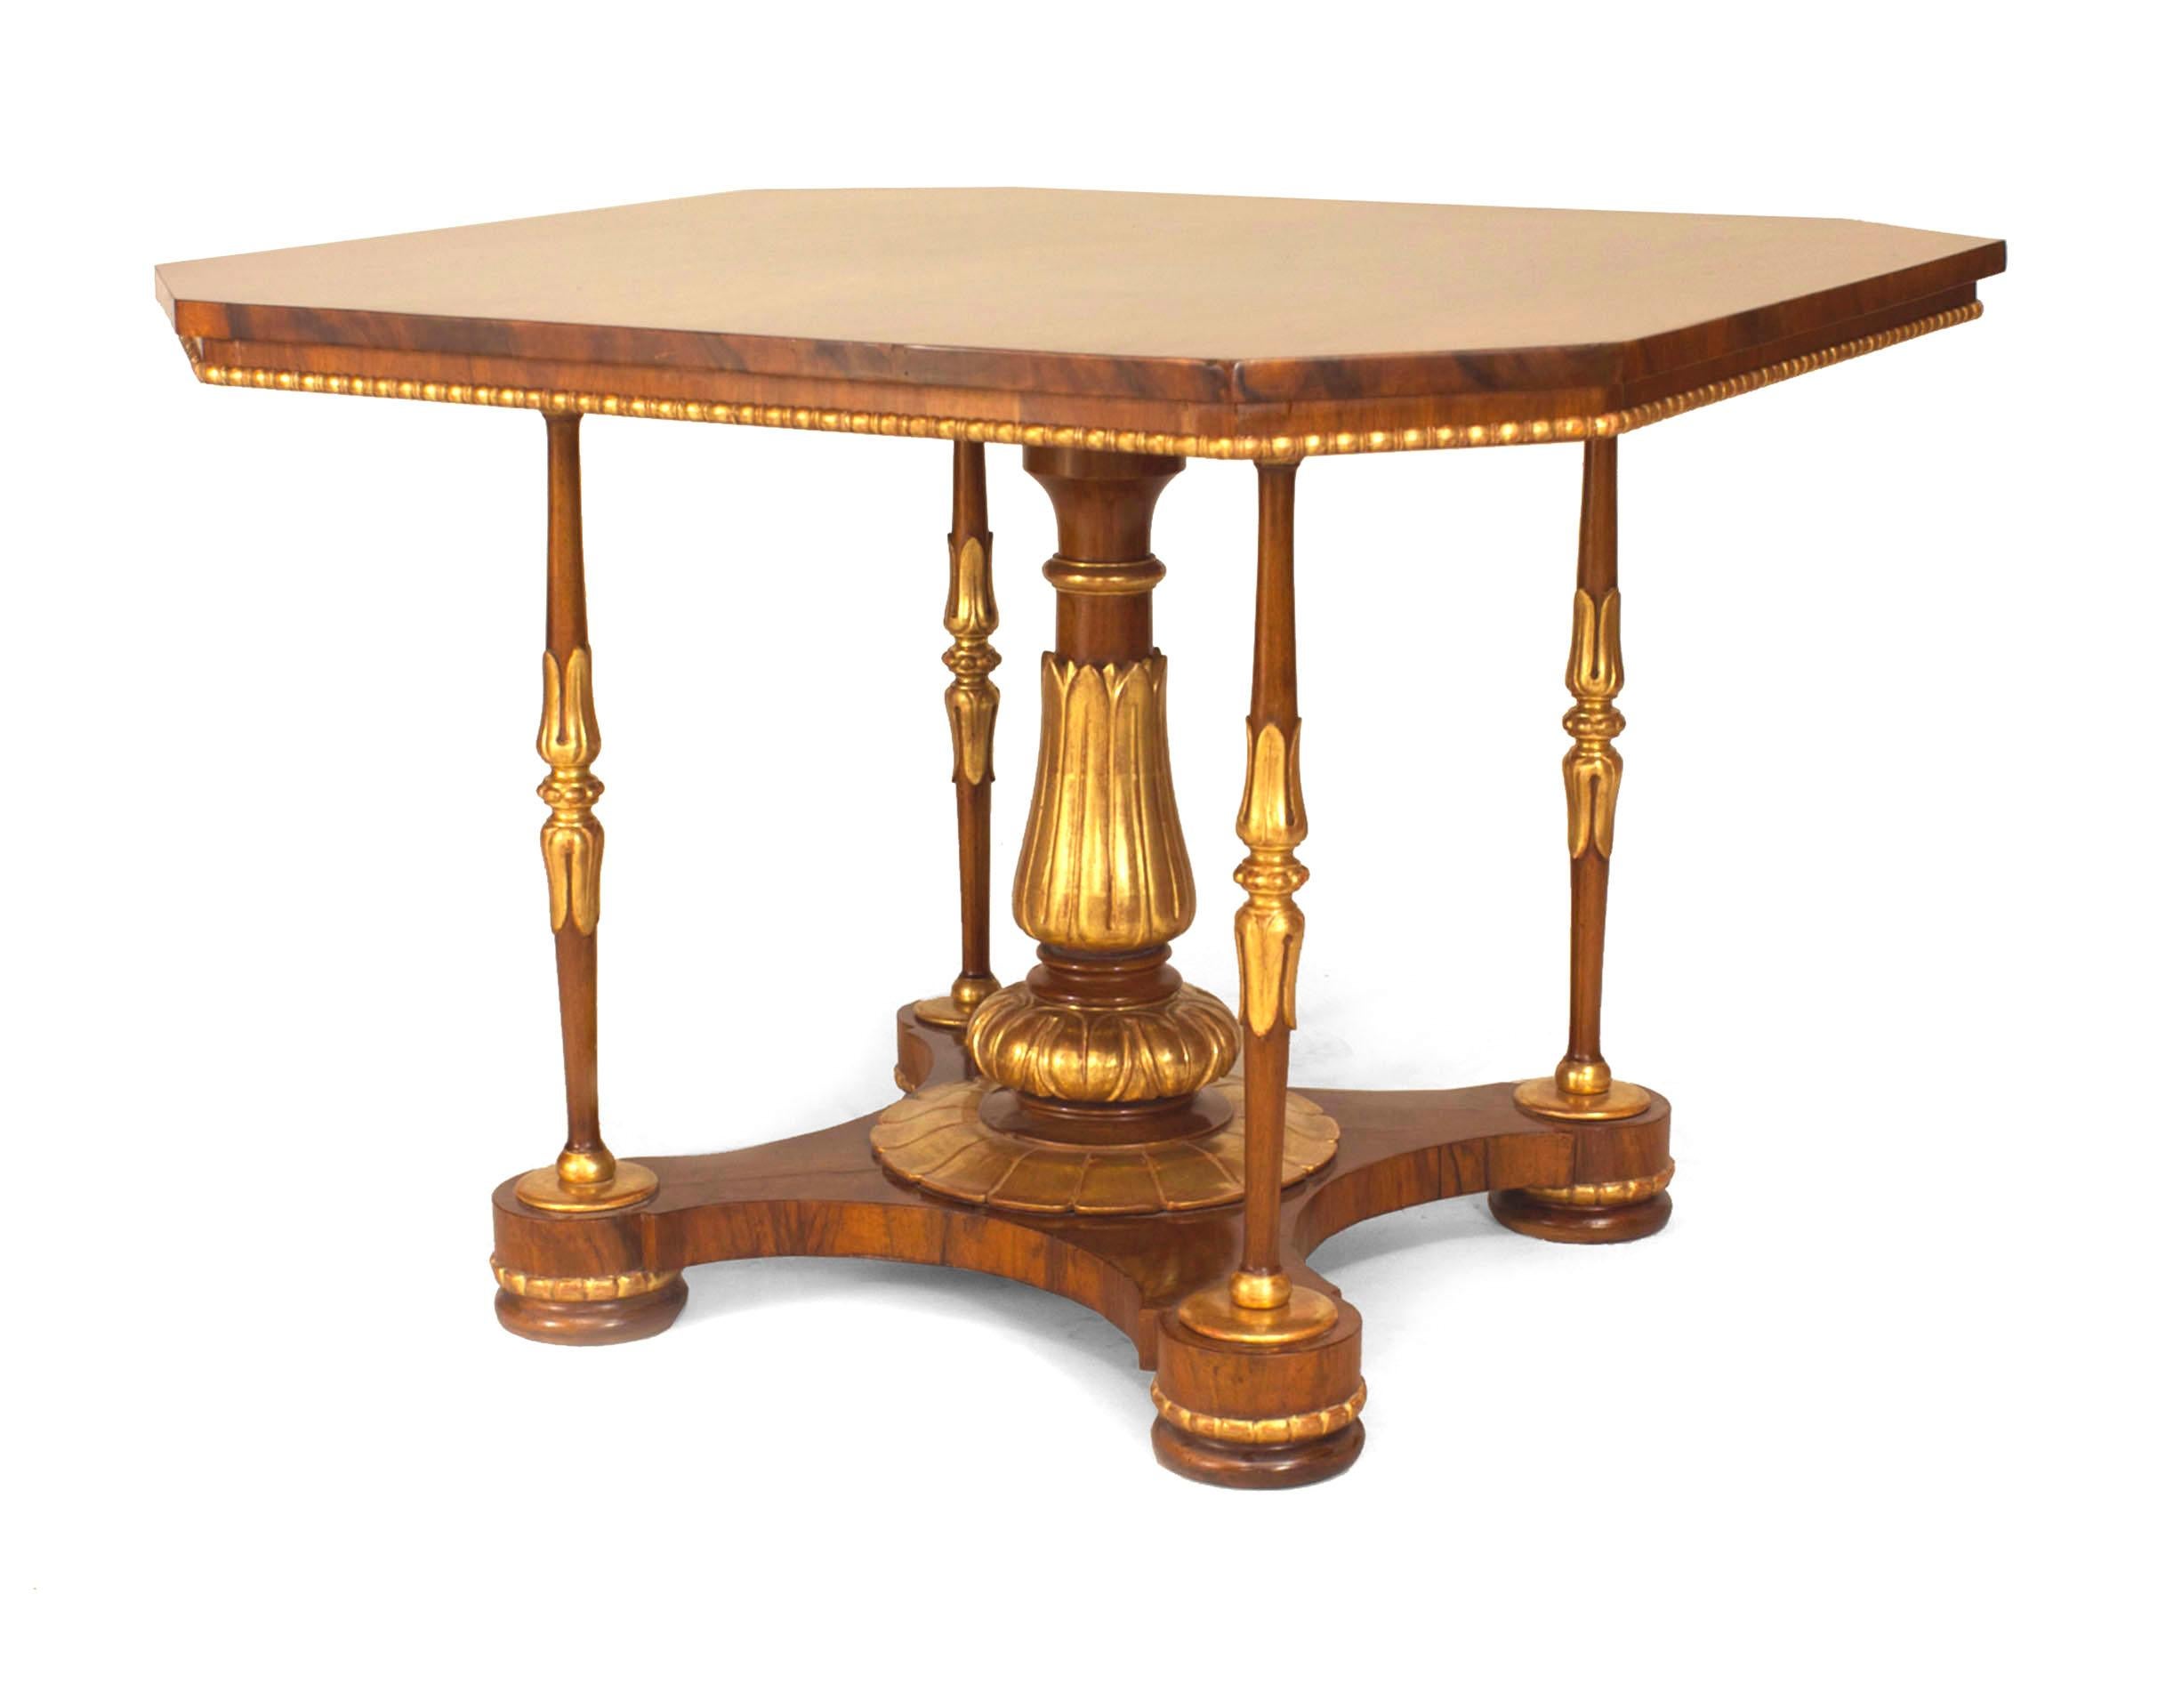 Table de centre de style Régence anglaise (circa 1850) en noyer avec garniture dorée, avec un plateau carré et des coins inclinés supportés par un piédestal centré et 4 colonnes d'angle sur une base en plate-forme (attribuée à MOREL & SEDDON).
